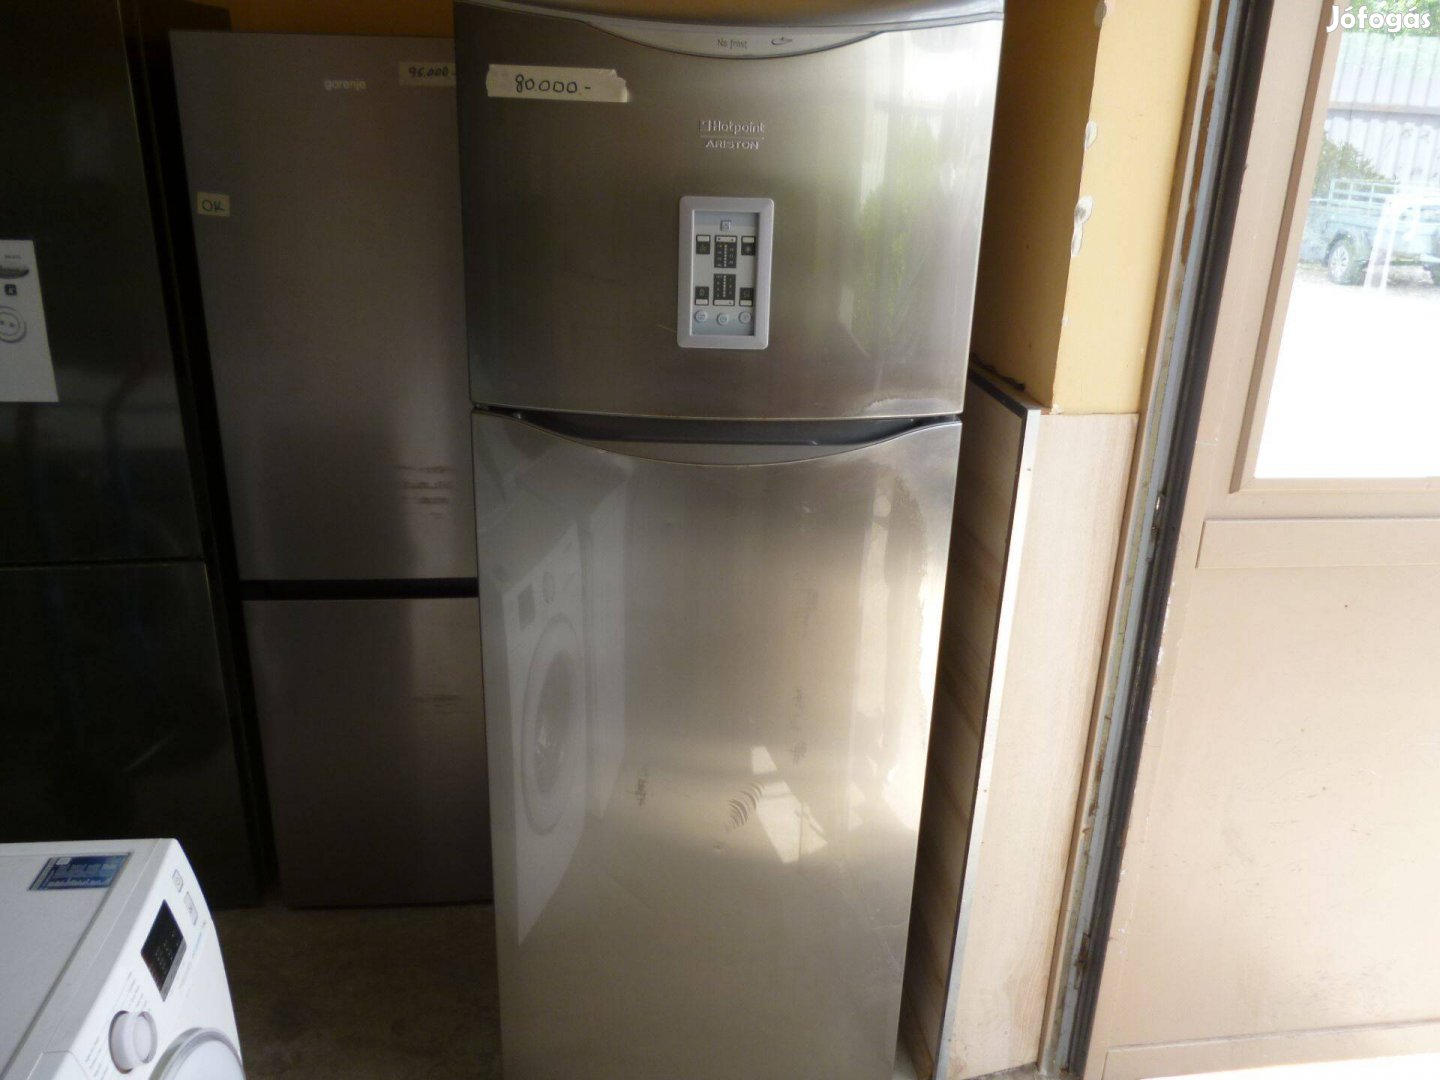 Használt kombinált hűtőgép